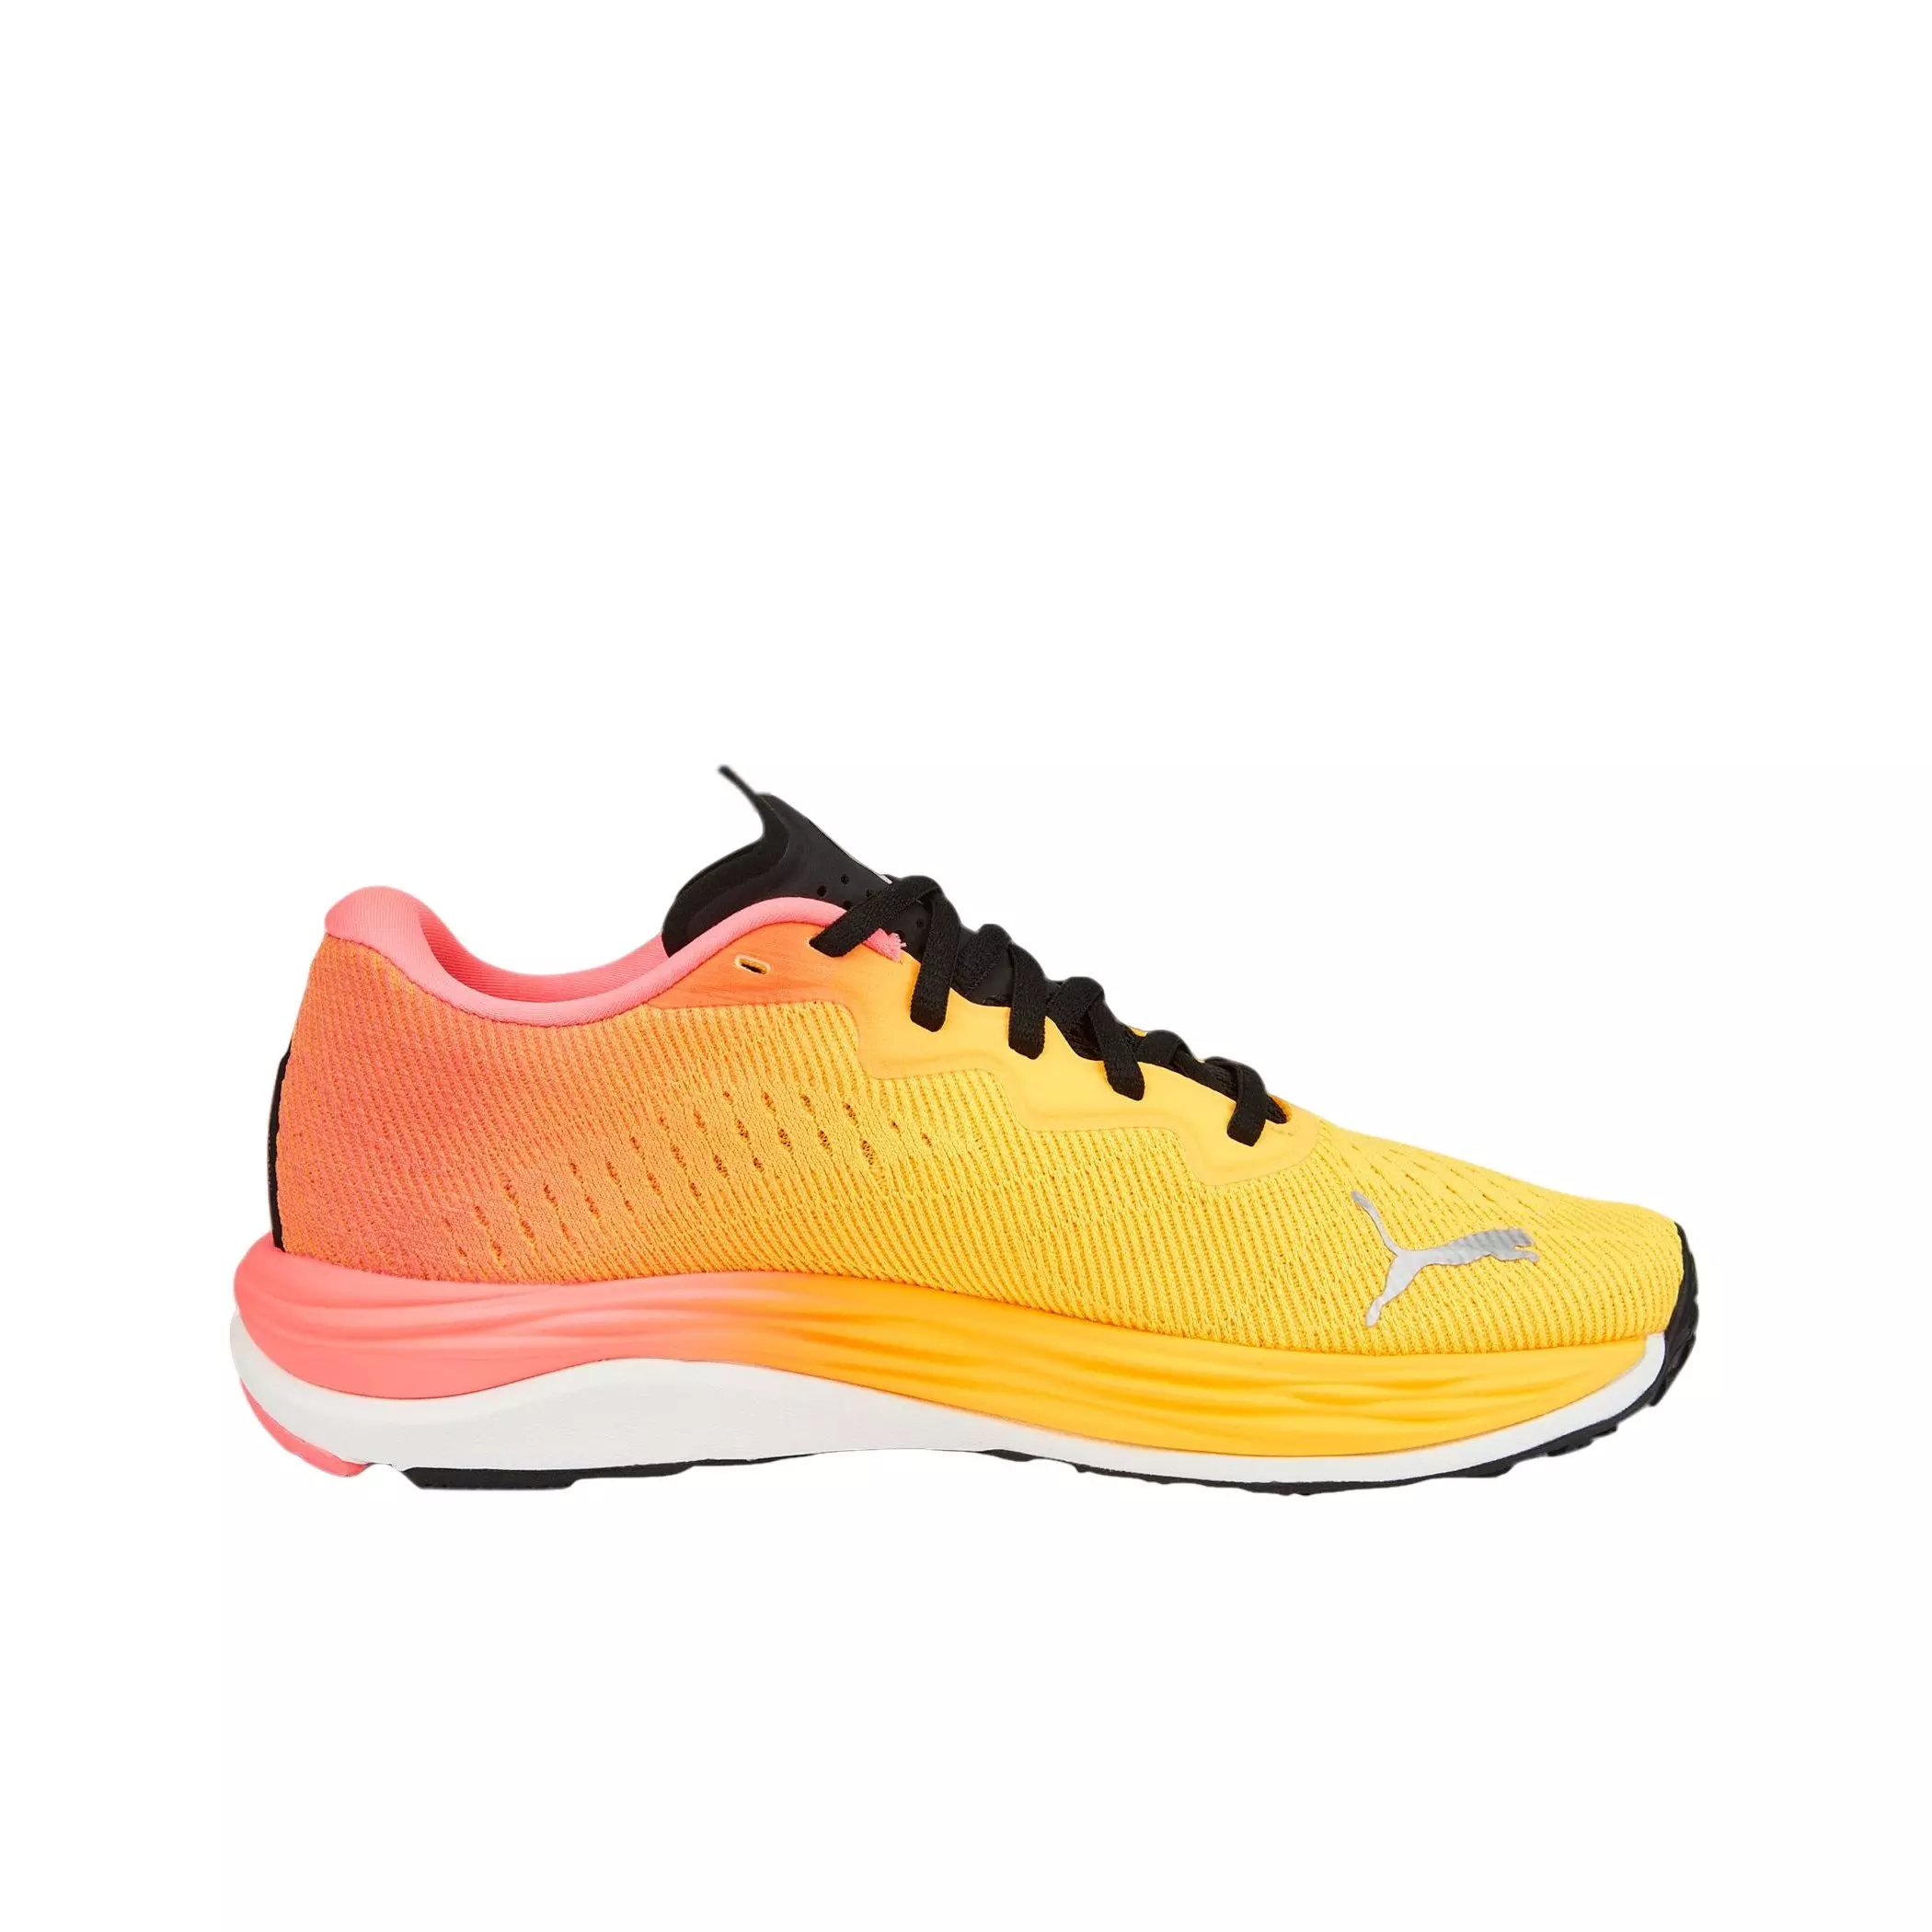 PUMA Velocity NITRO 2 Pink/Yellow Women's Running Shoe - Hibbett